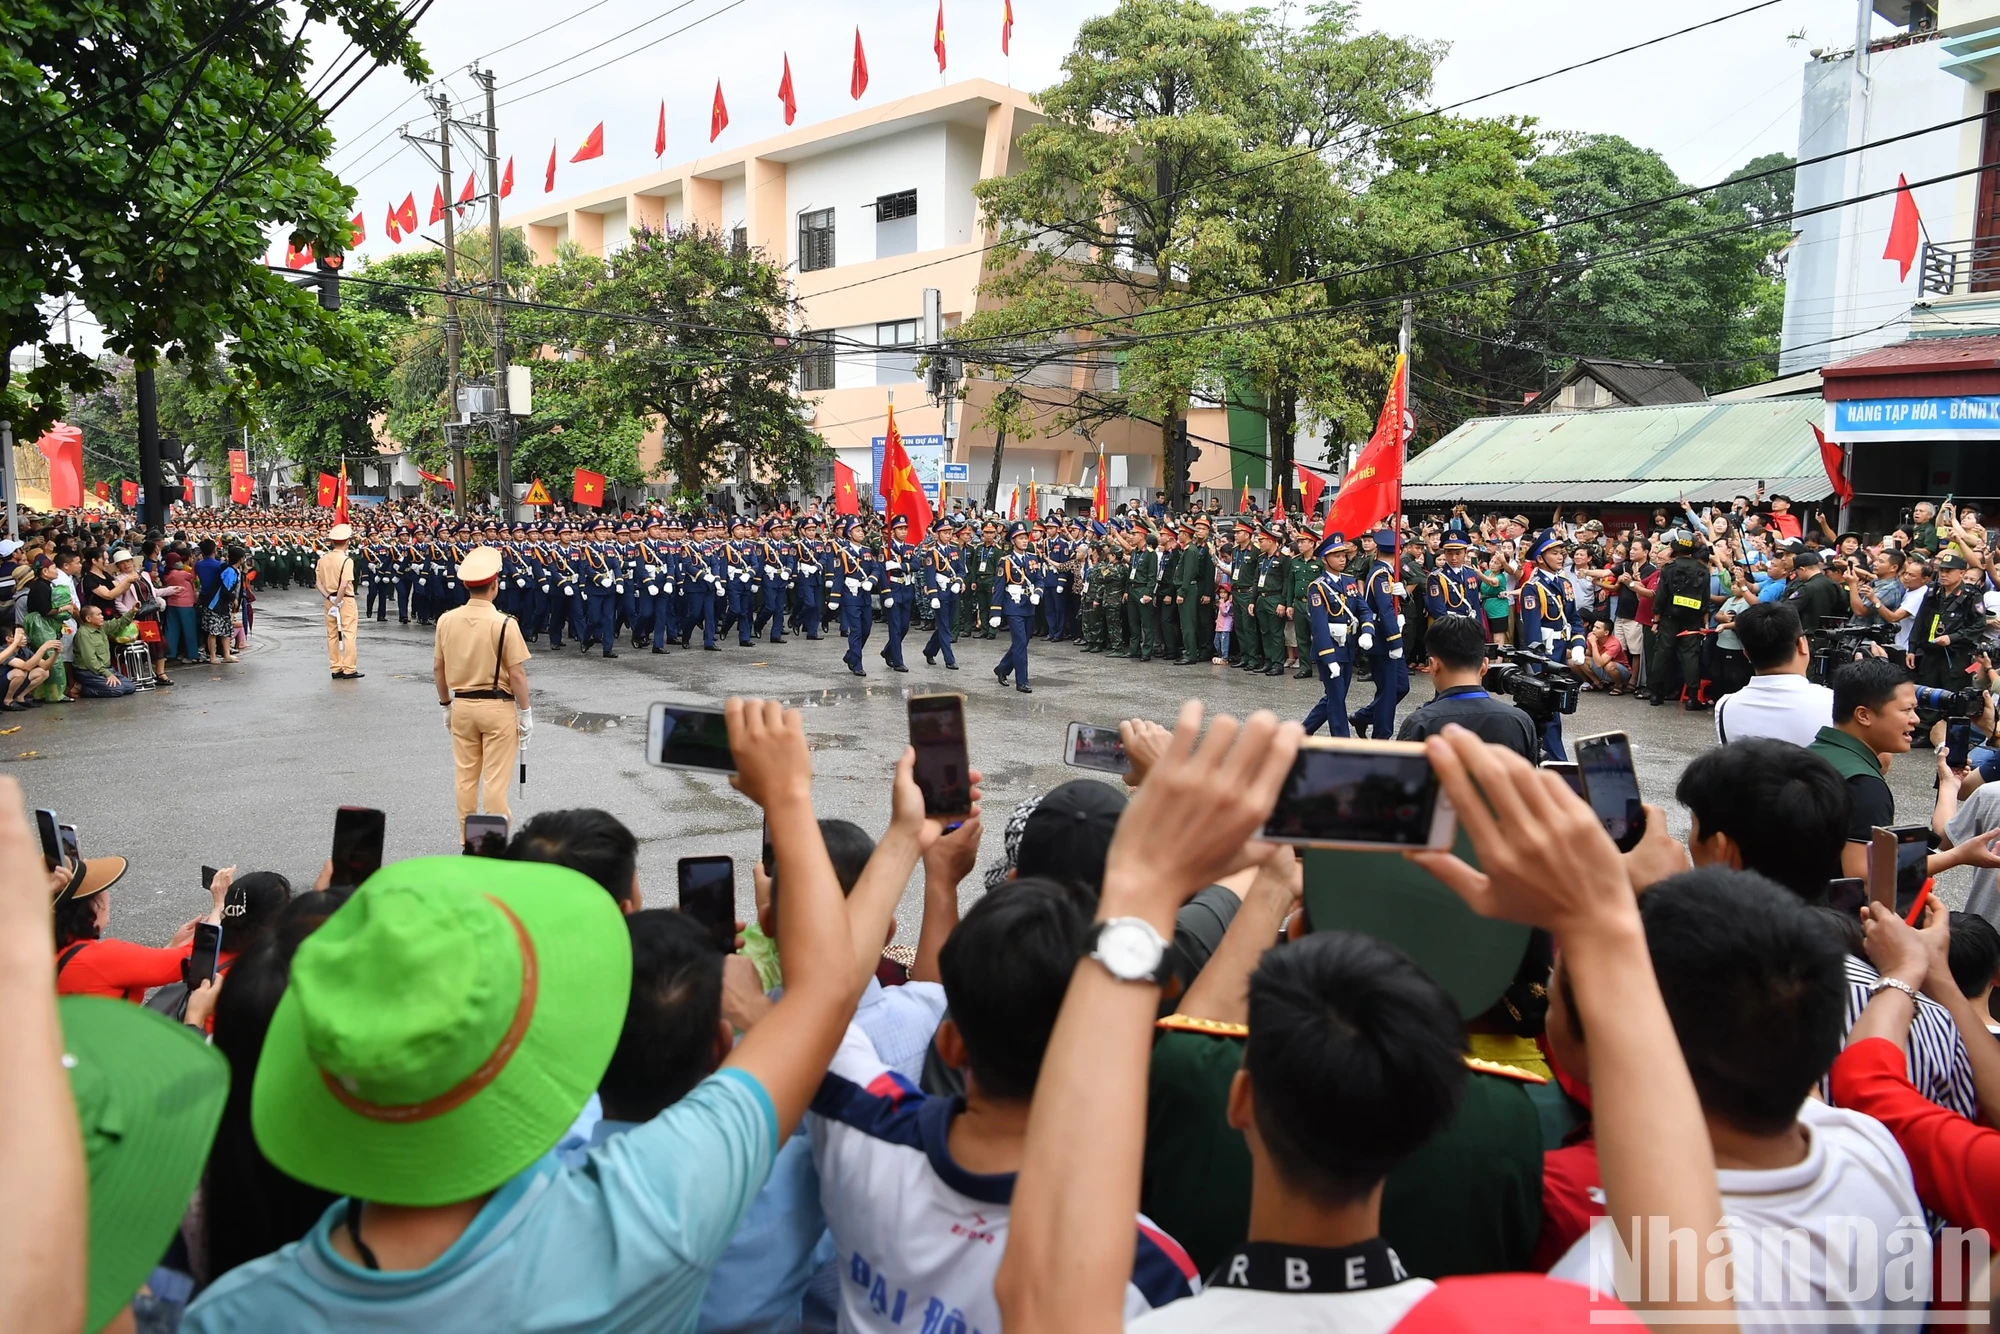 Ngay khi các khối diễu hành đi qua, người dân và du khách tại thành phố Điện Biên Phủ vô cùng hào hứng.

